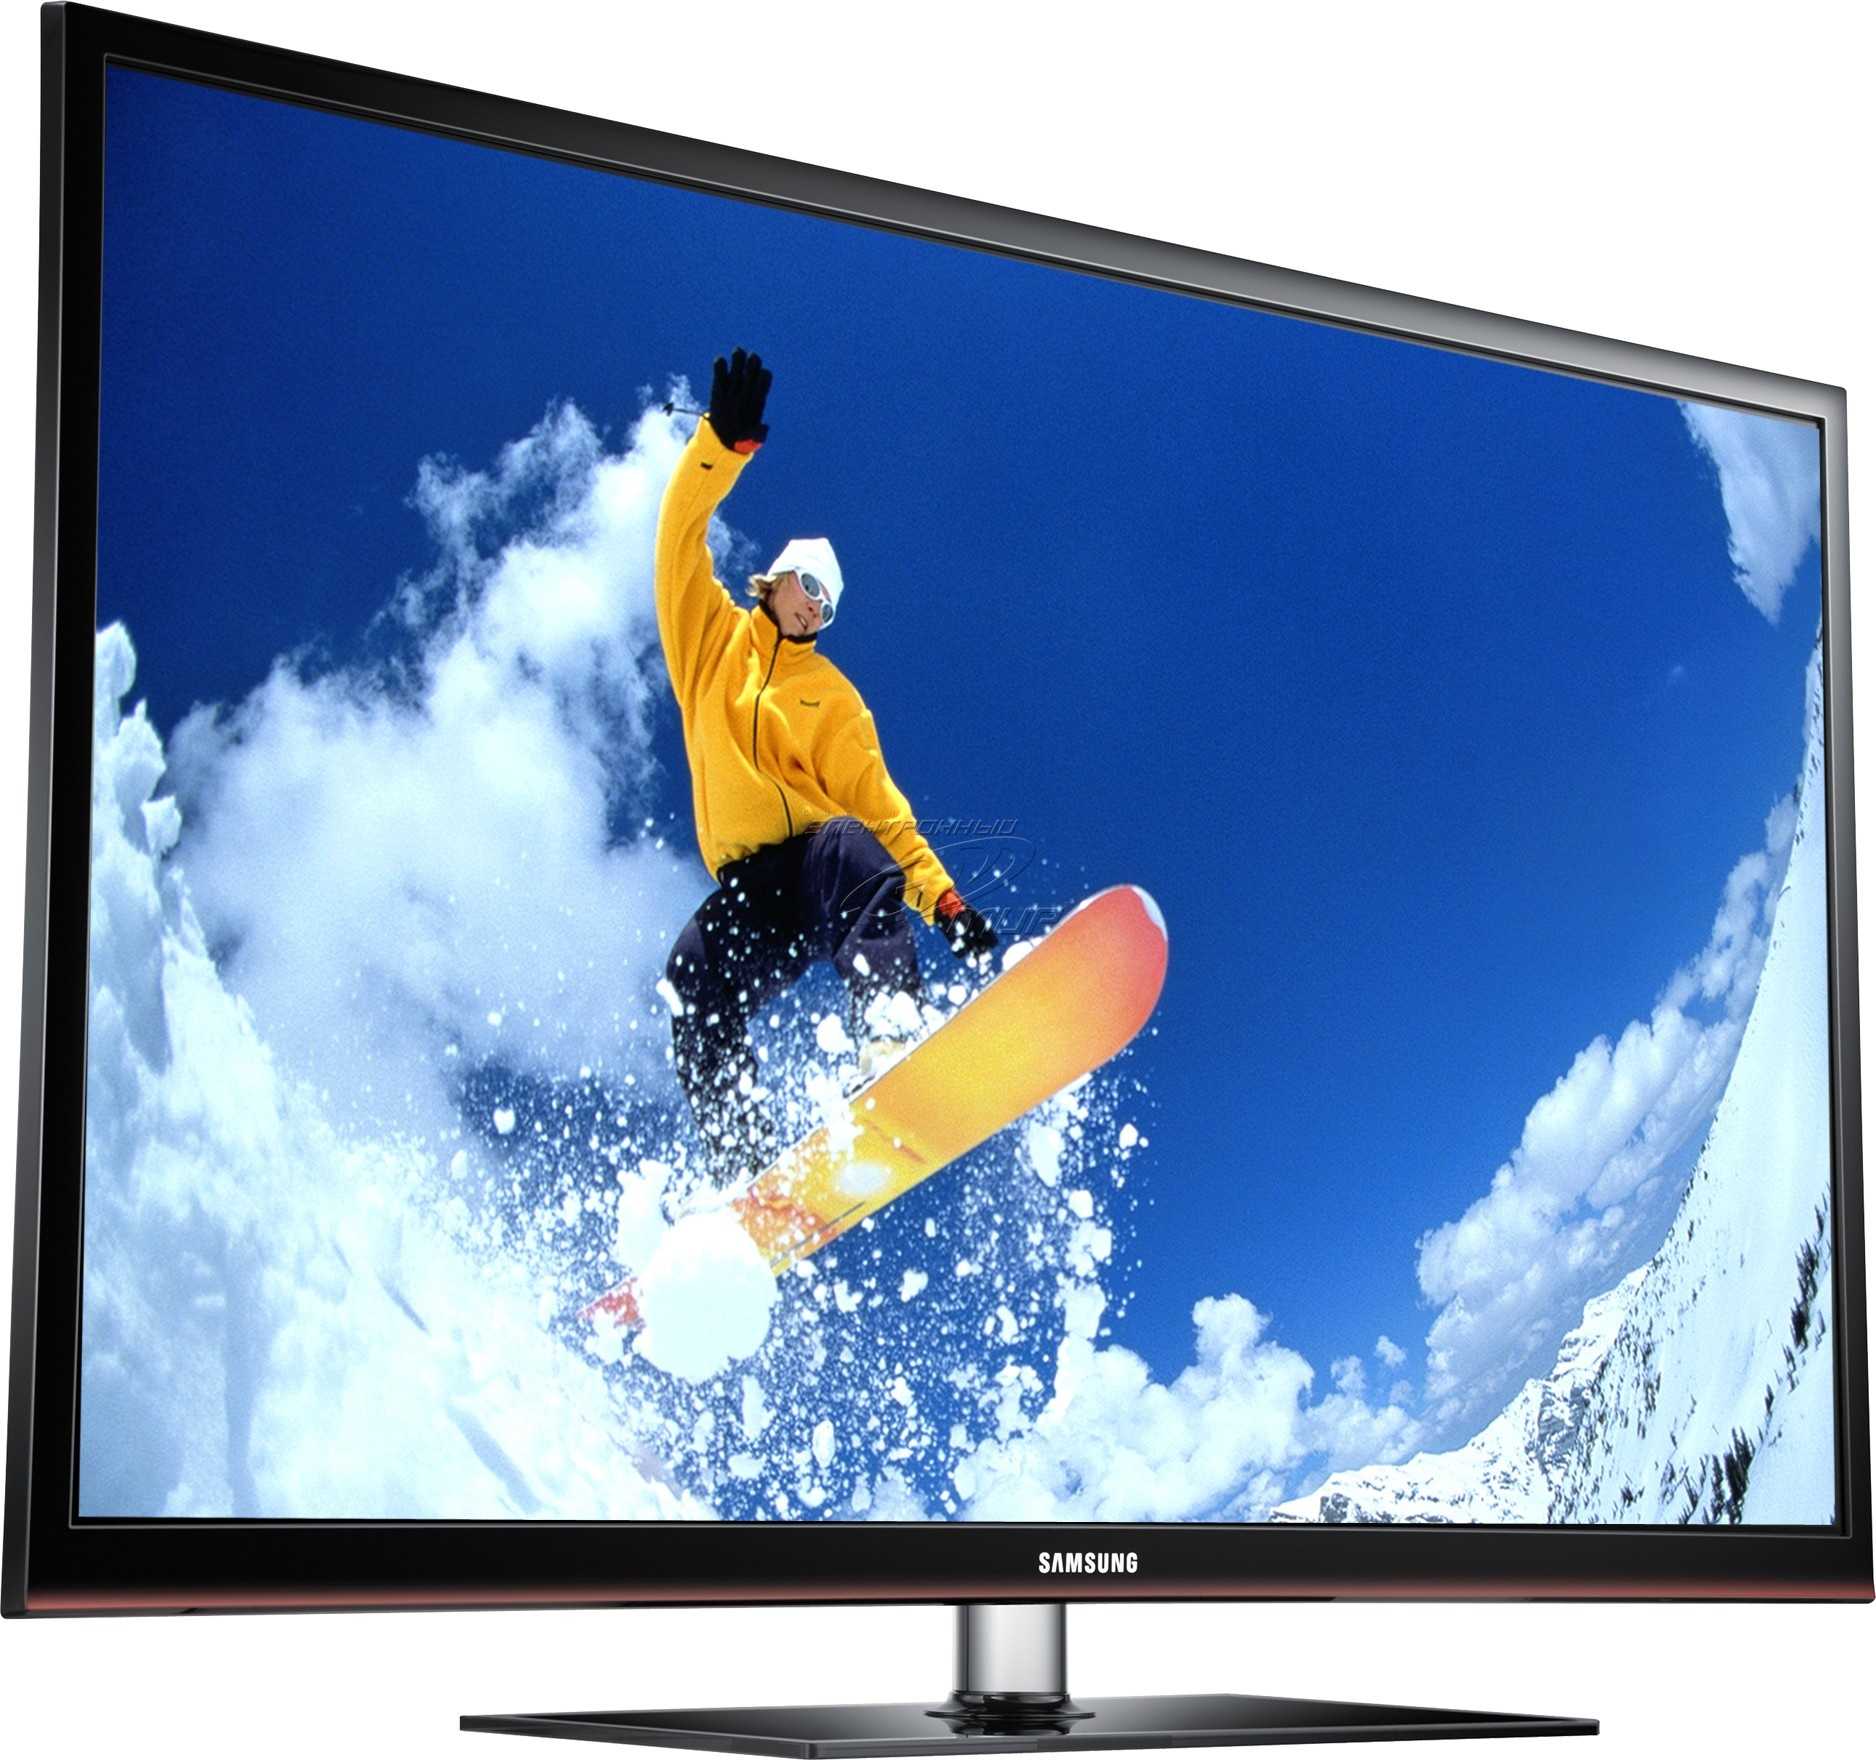 Samsung ps51e537 - купить , скидки, цена, отзывы, обзор, характеристики - телевизоры